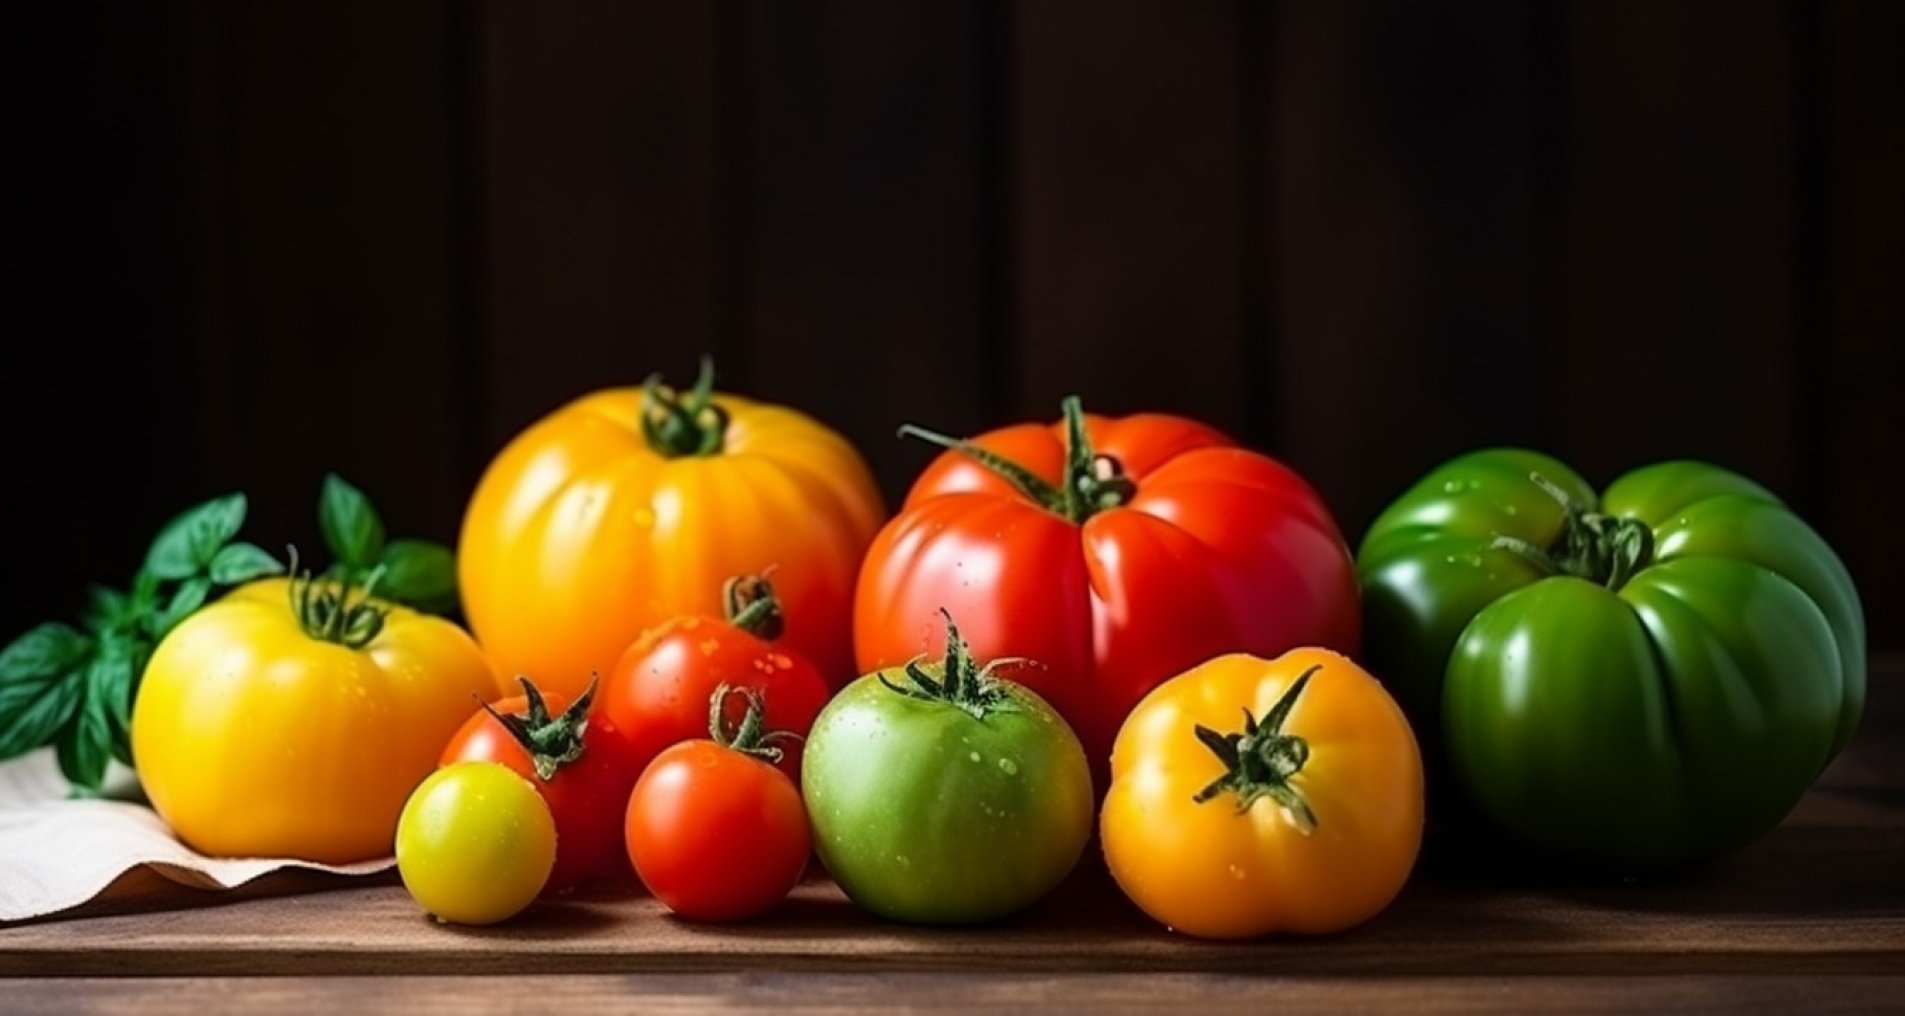 Как правильно выращивать помидоры - советы фермера — Шуба